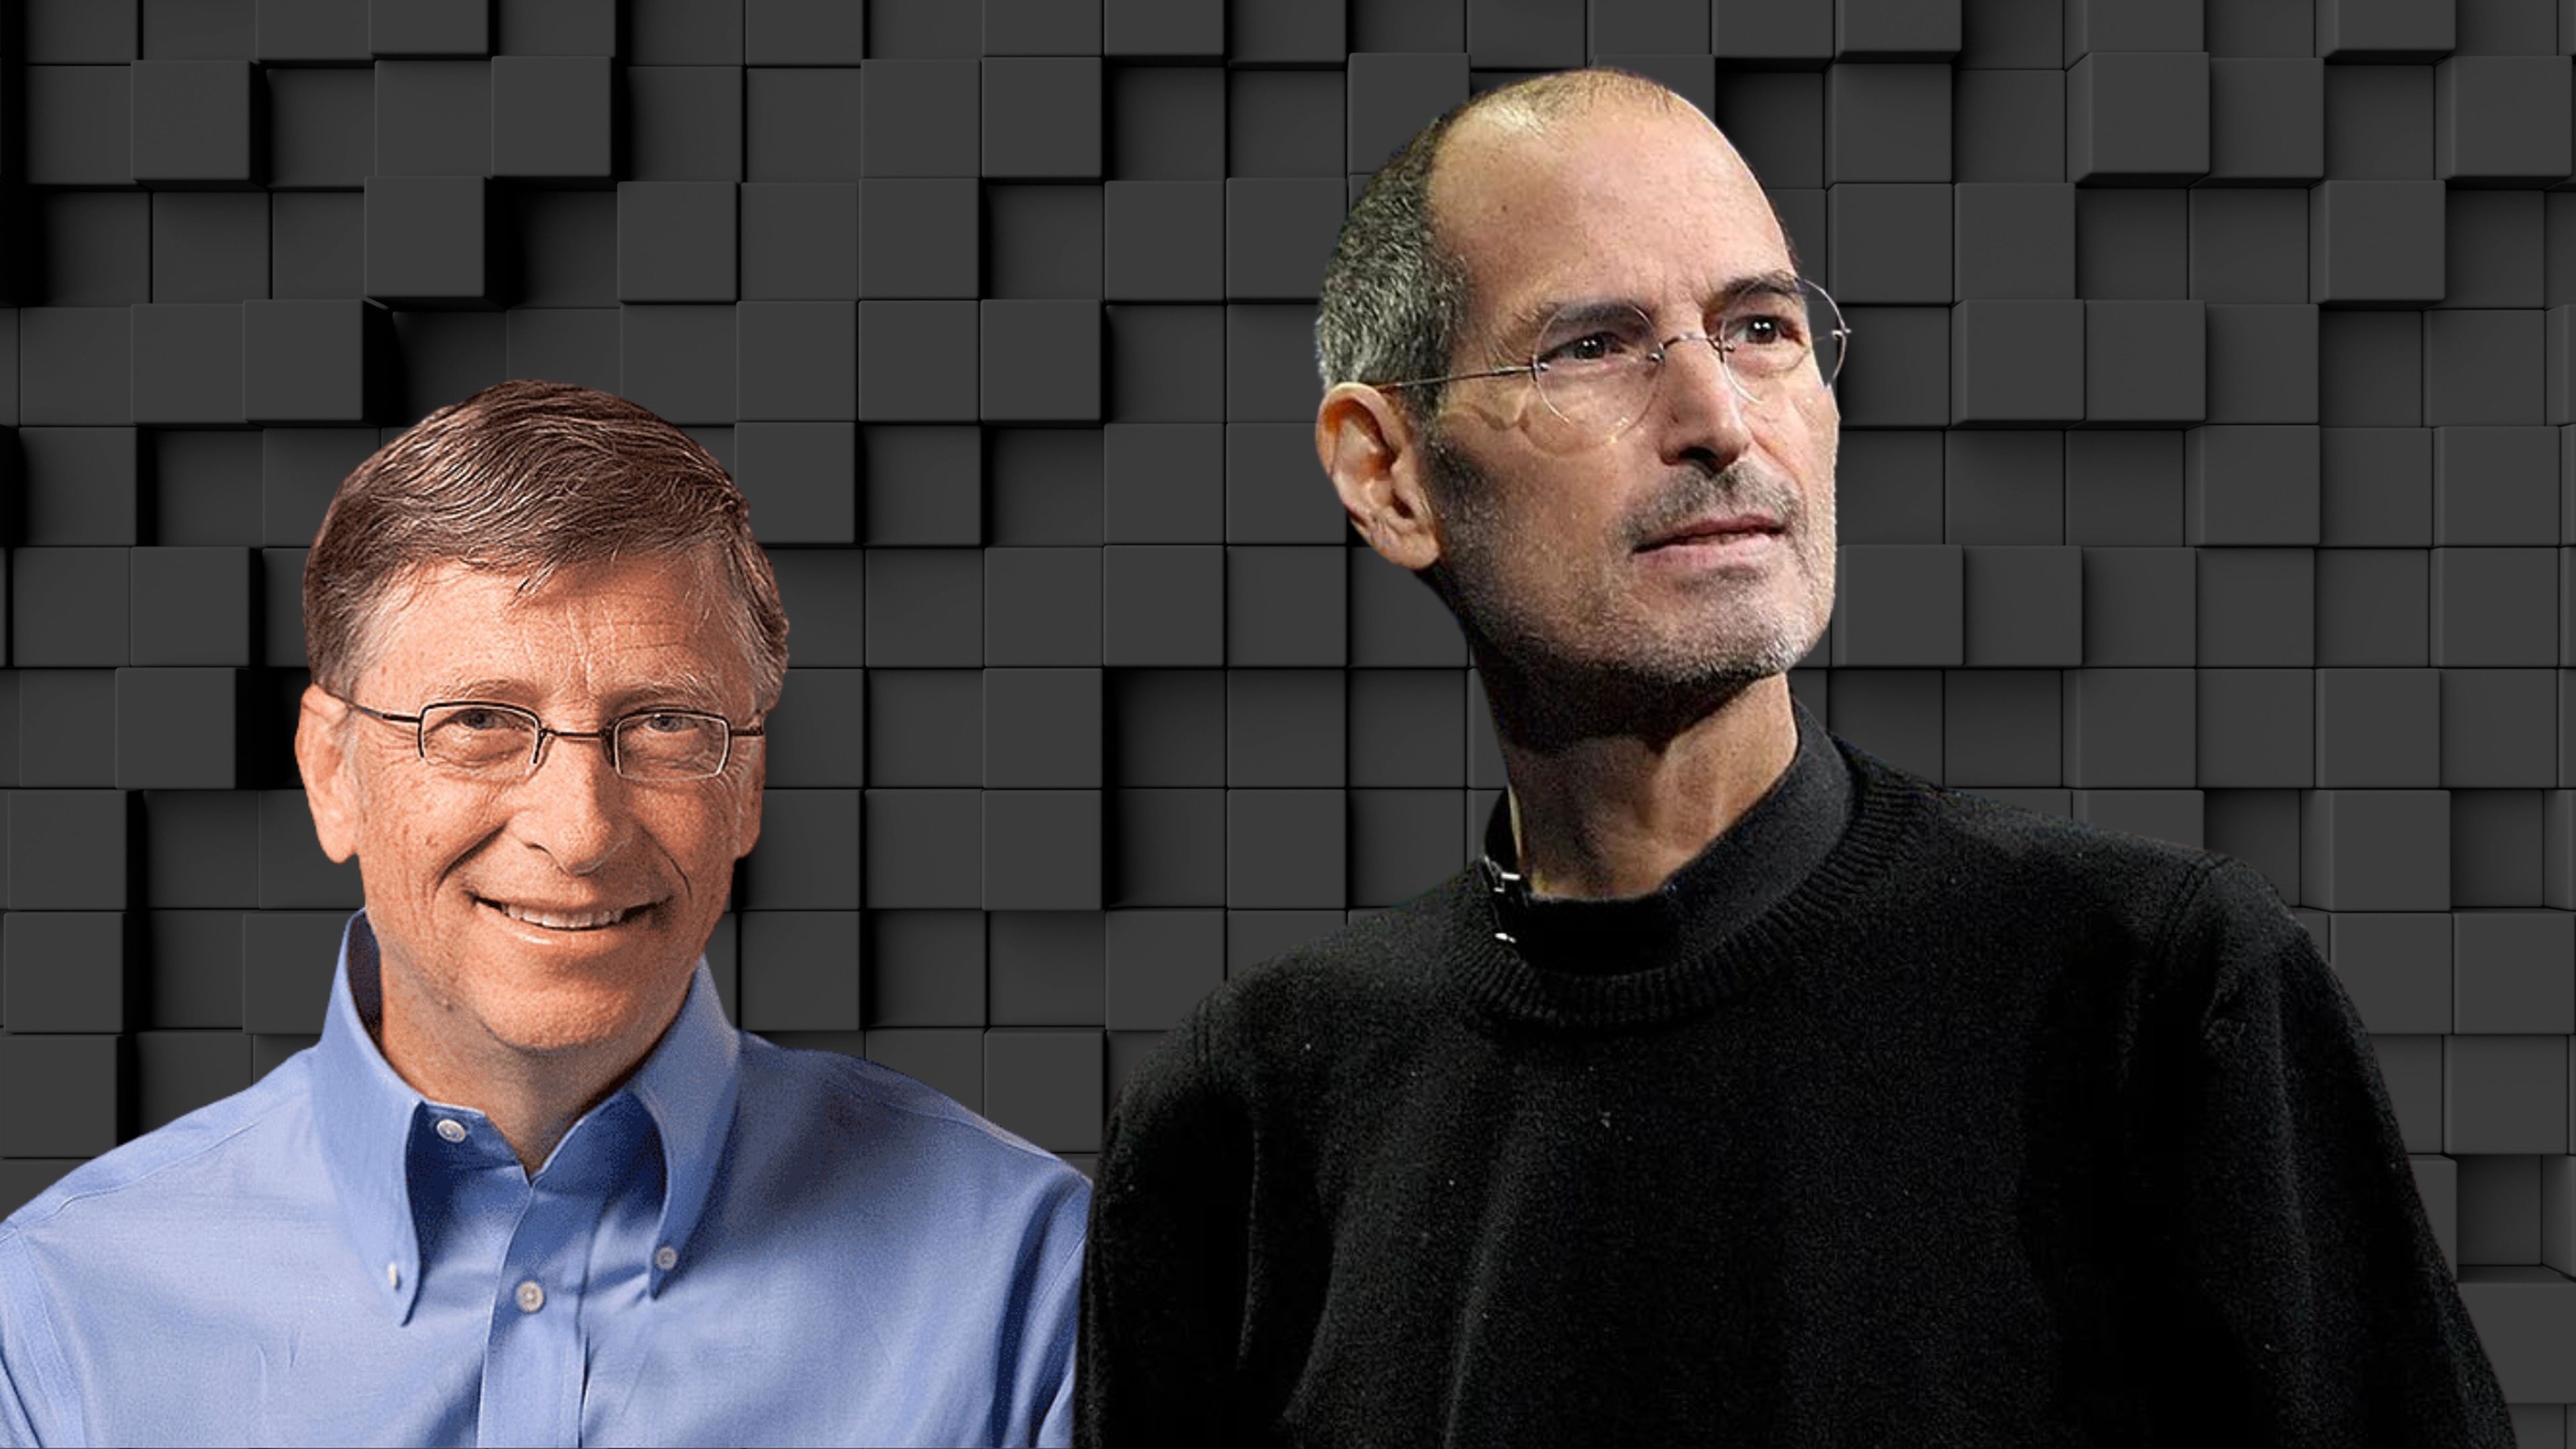 Bill Gates confiesa la cualidad que más envidiaba de Steve Jobs: "nunca lograré hacer eso"